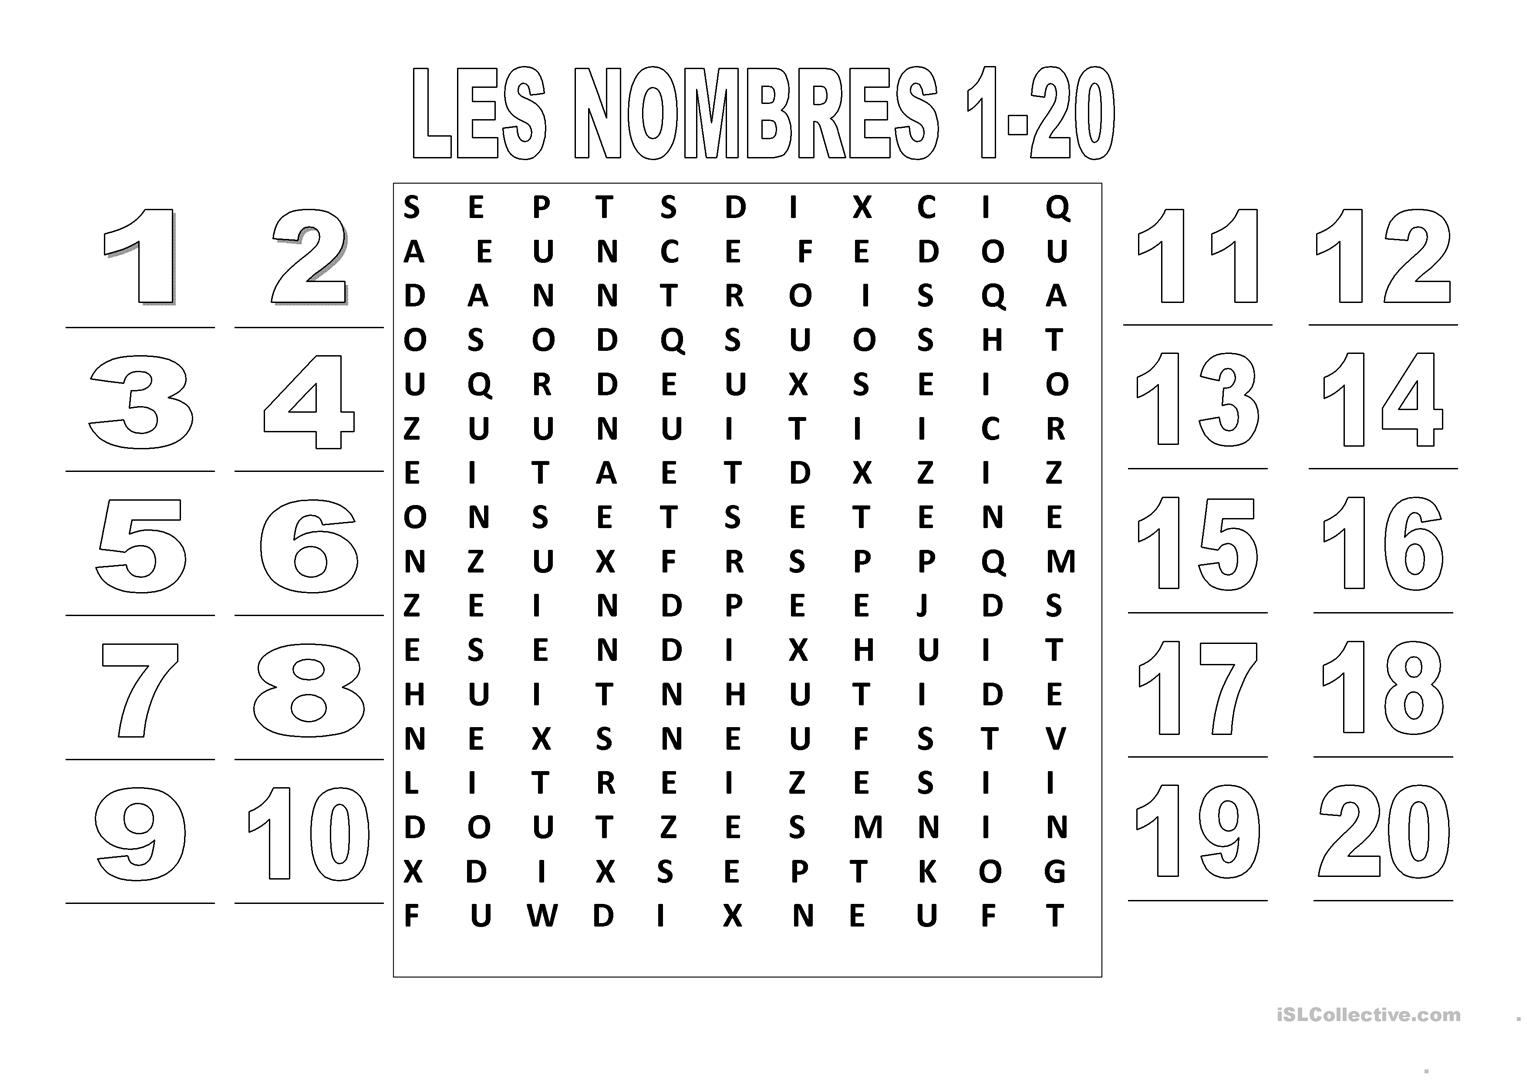 Les Nombres 1-20 (Mots Croisés) - Français Fle Fiches intérieur Mots Croisés Gratuits À Imprimer